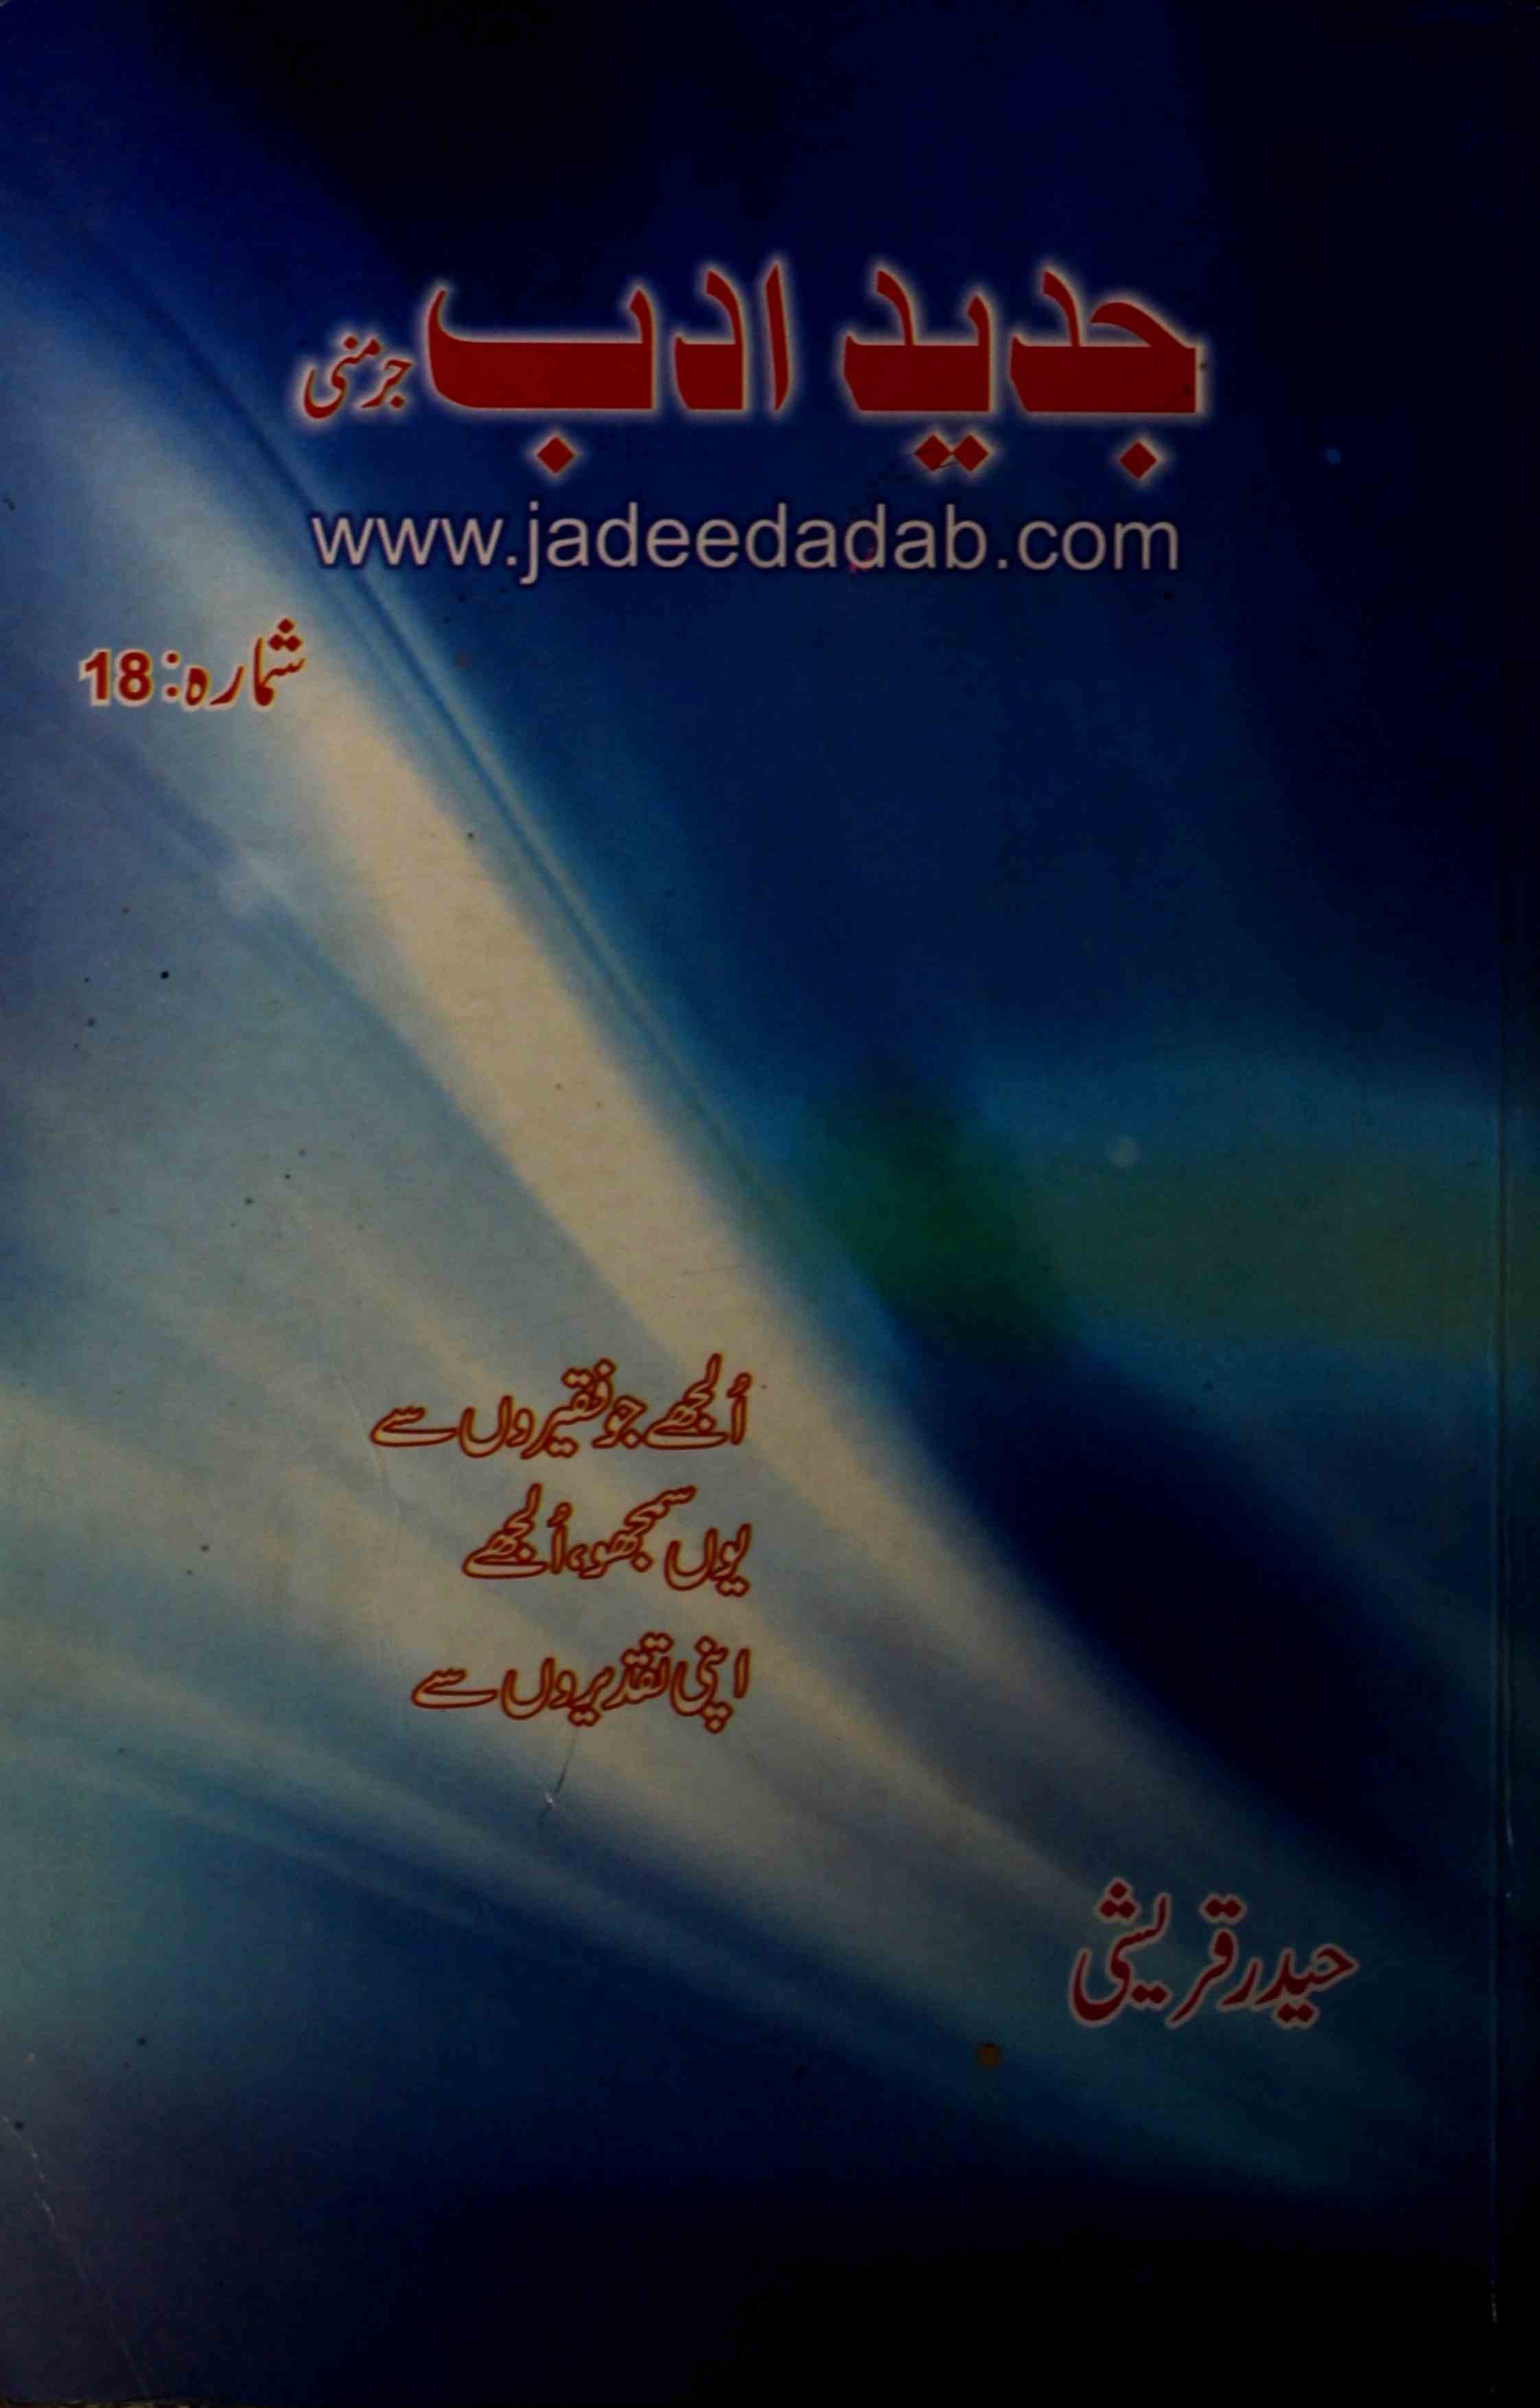 JADEED ADAB Shumarah 18